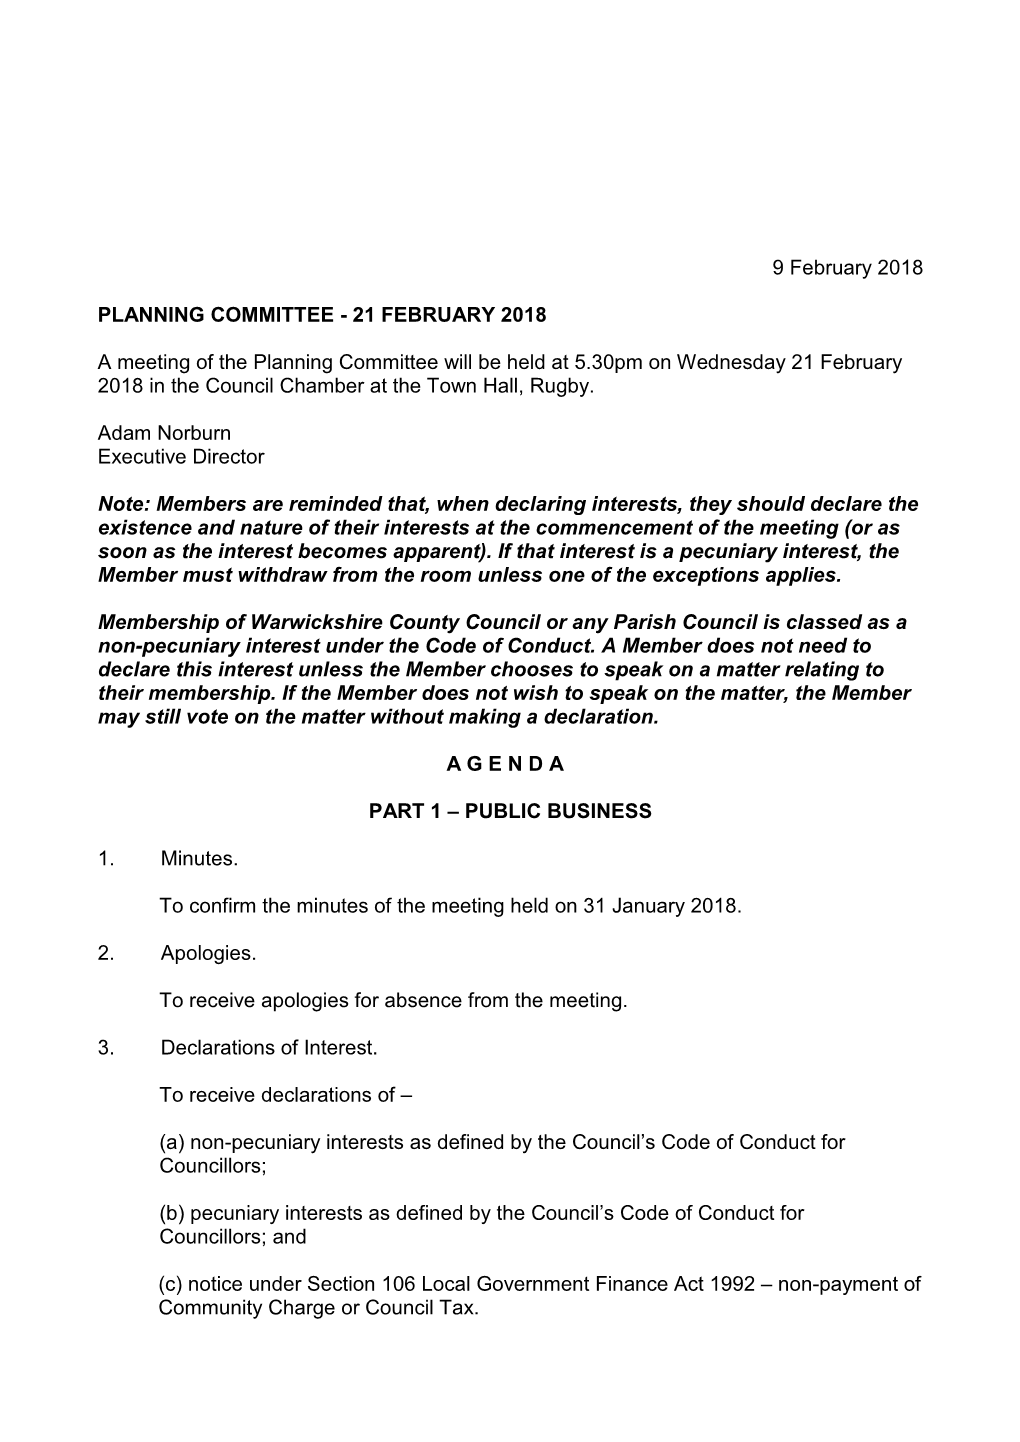 Planning Committee Agenda 21 February 2018